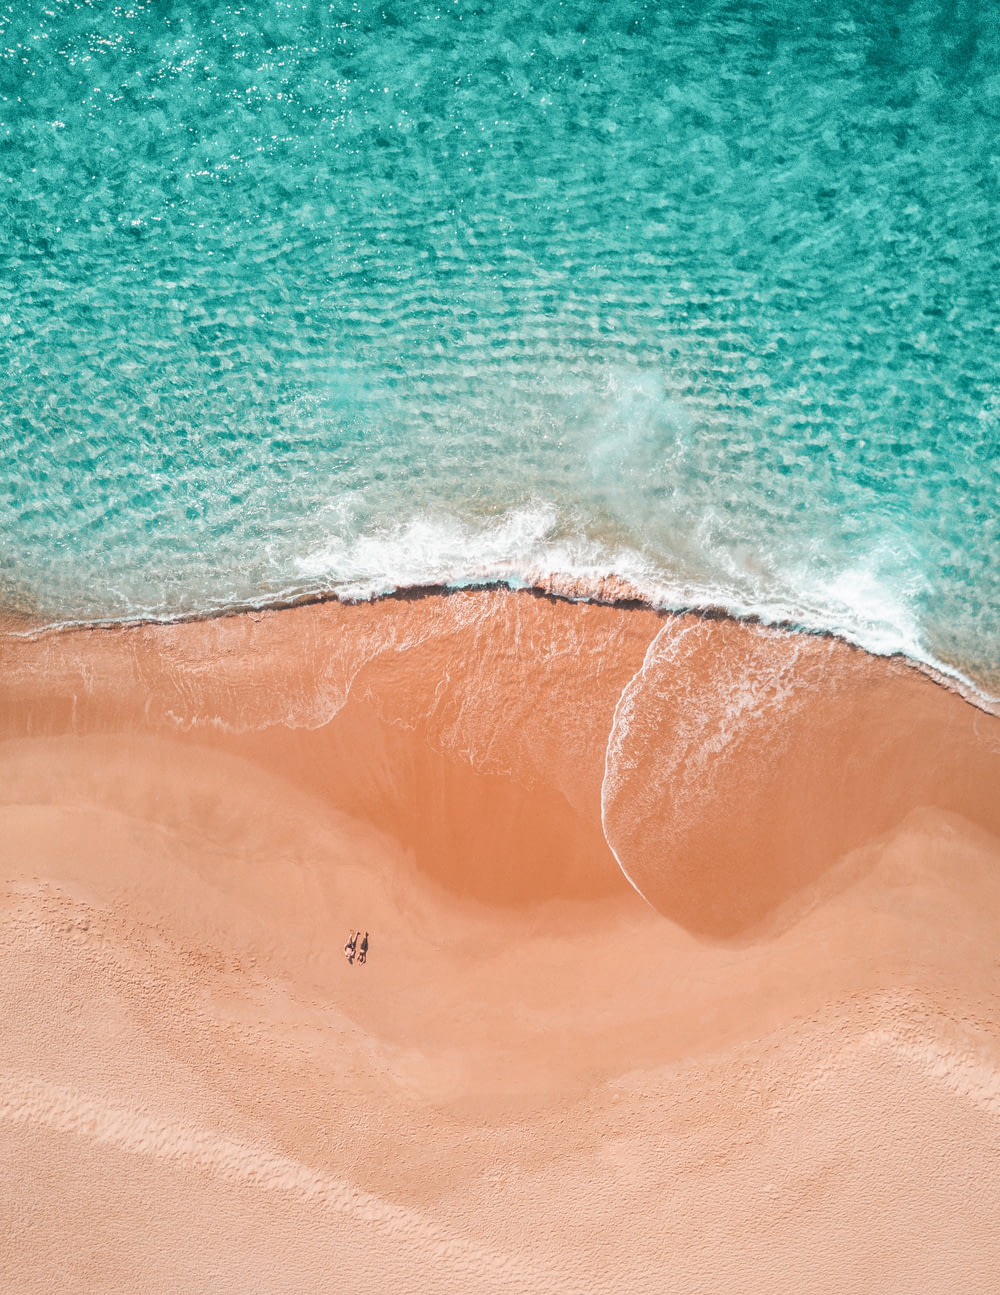 해변에서 일광욕을 하는 두 사람의 항공 사진